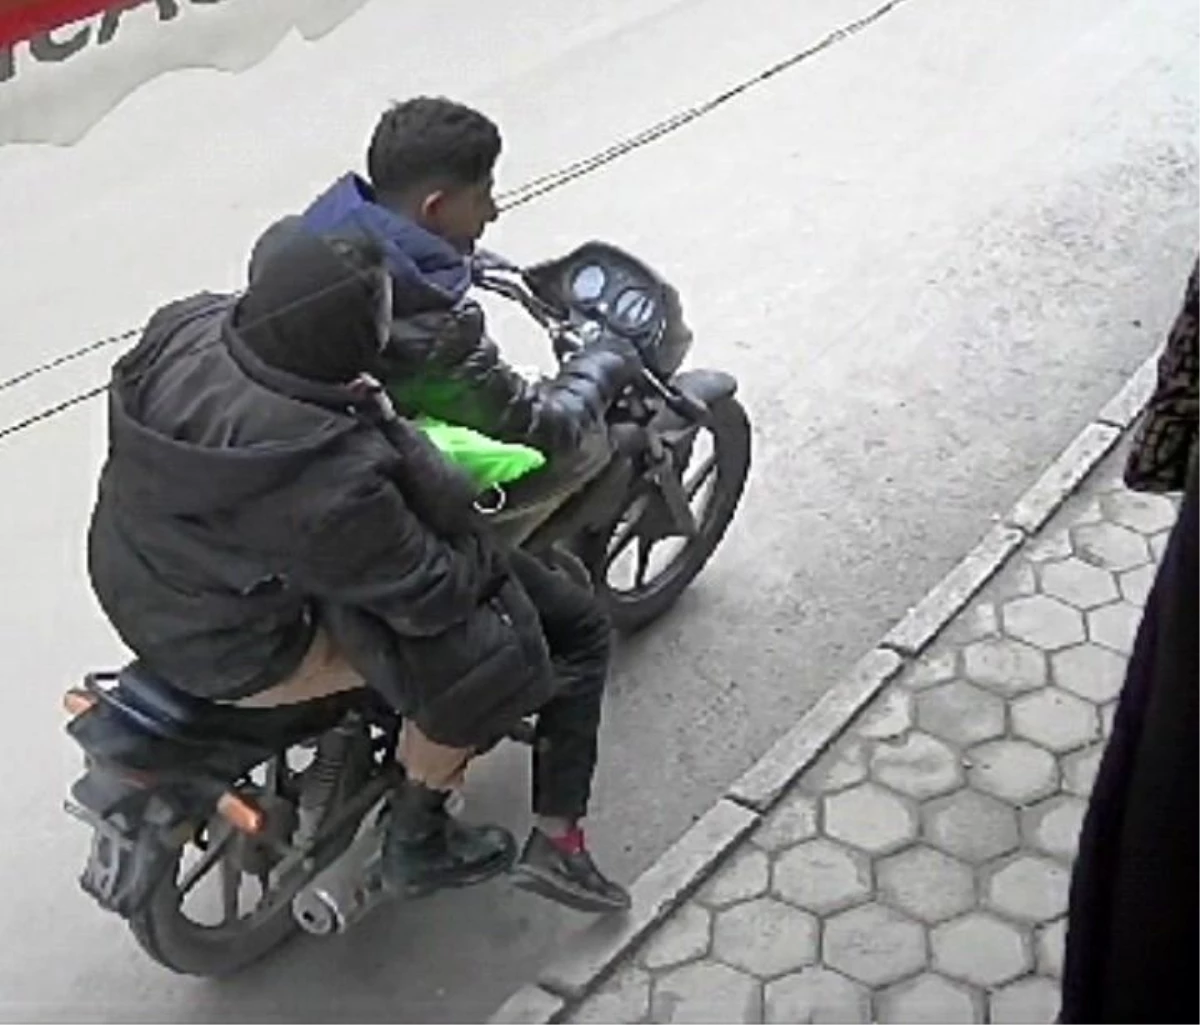 Motosikletle gelen hırsızlar saniyeler içinde kıyafetleri böyle çaldılar